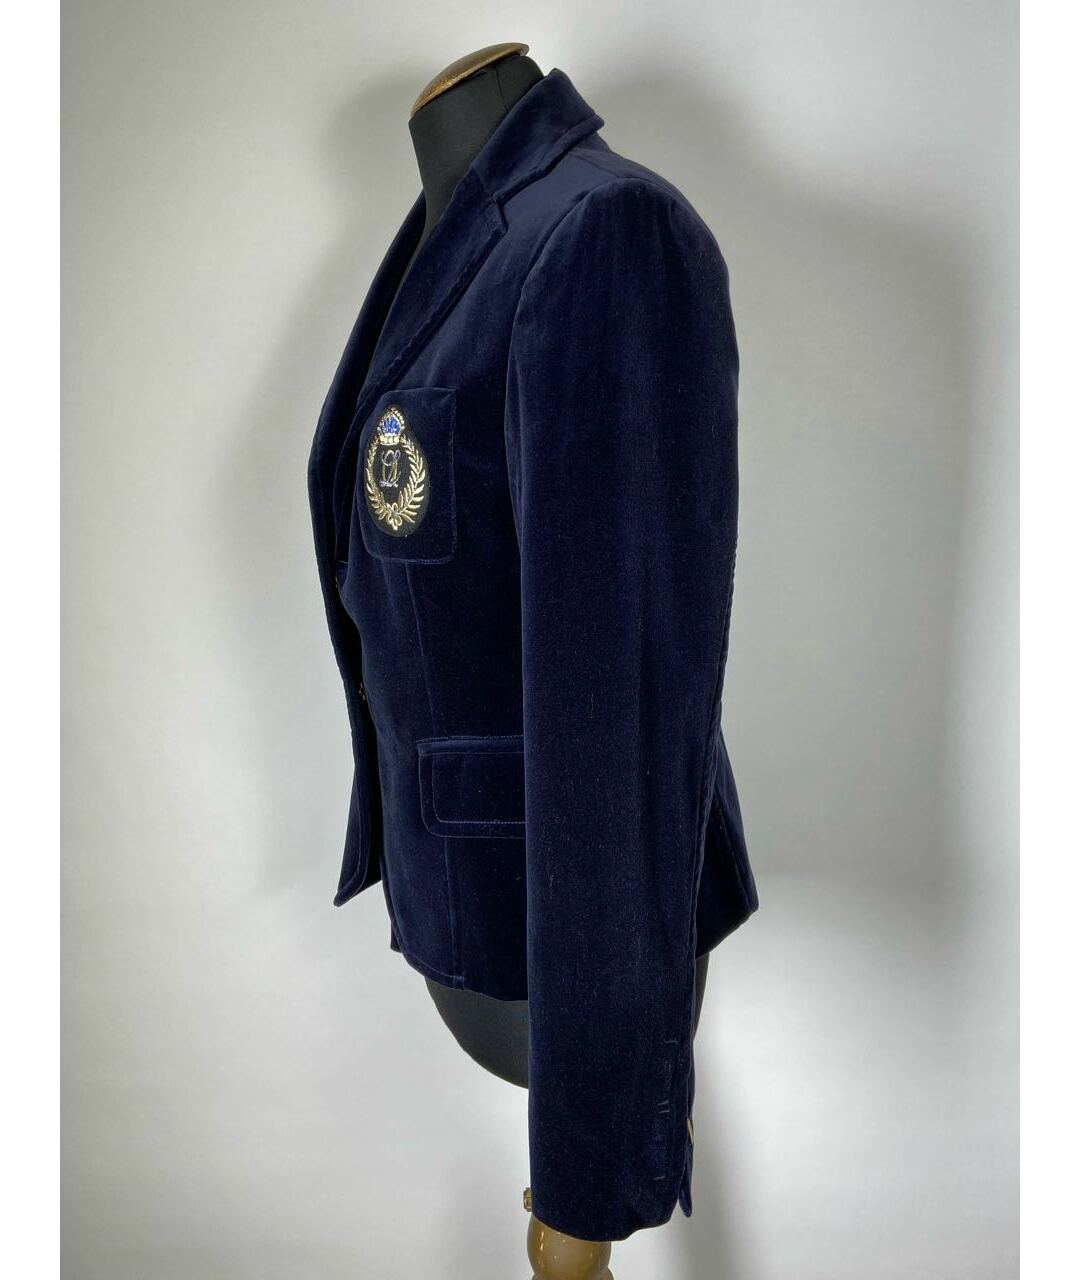 Marco Lombardi Синий бархатный жакет/пиджак, фото 2